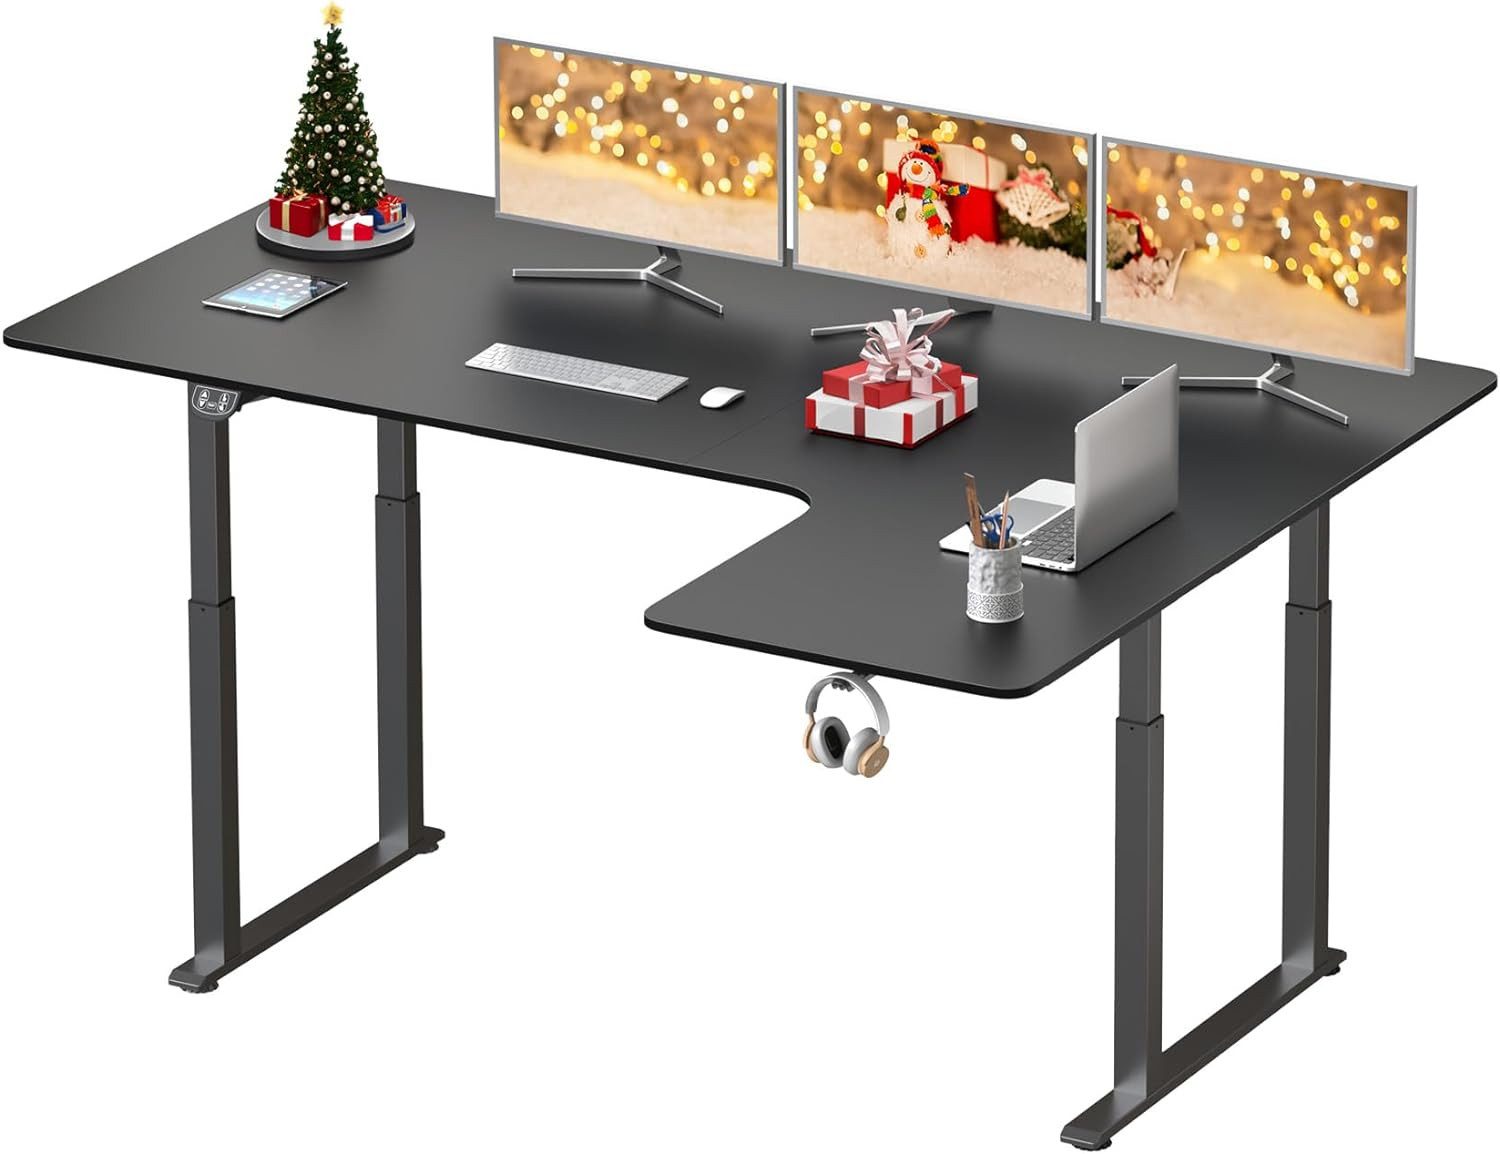 Dripex Eckschreibtisch Elektrisch Höhenverstellbar 180x110 L-form Schreibtisch Standing Desk